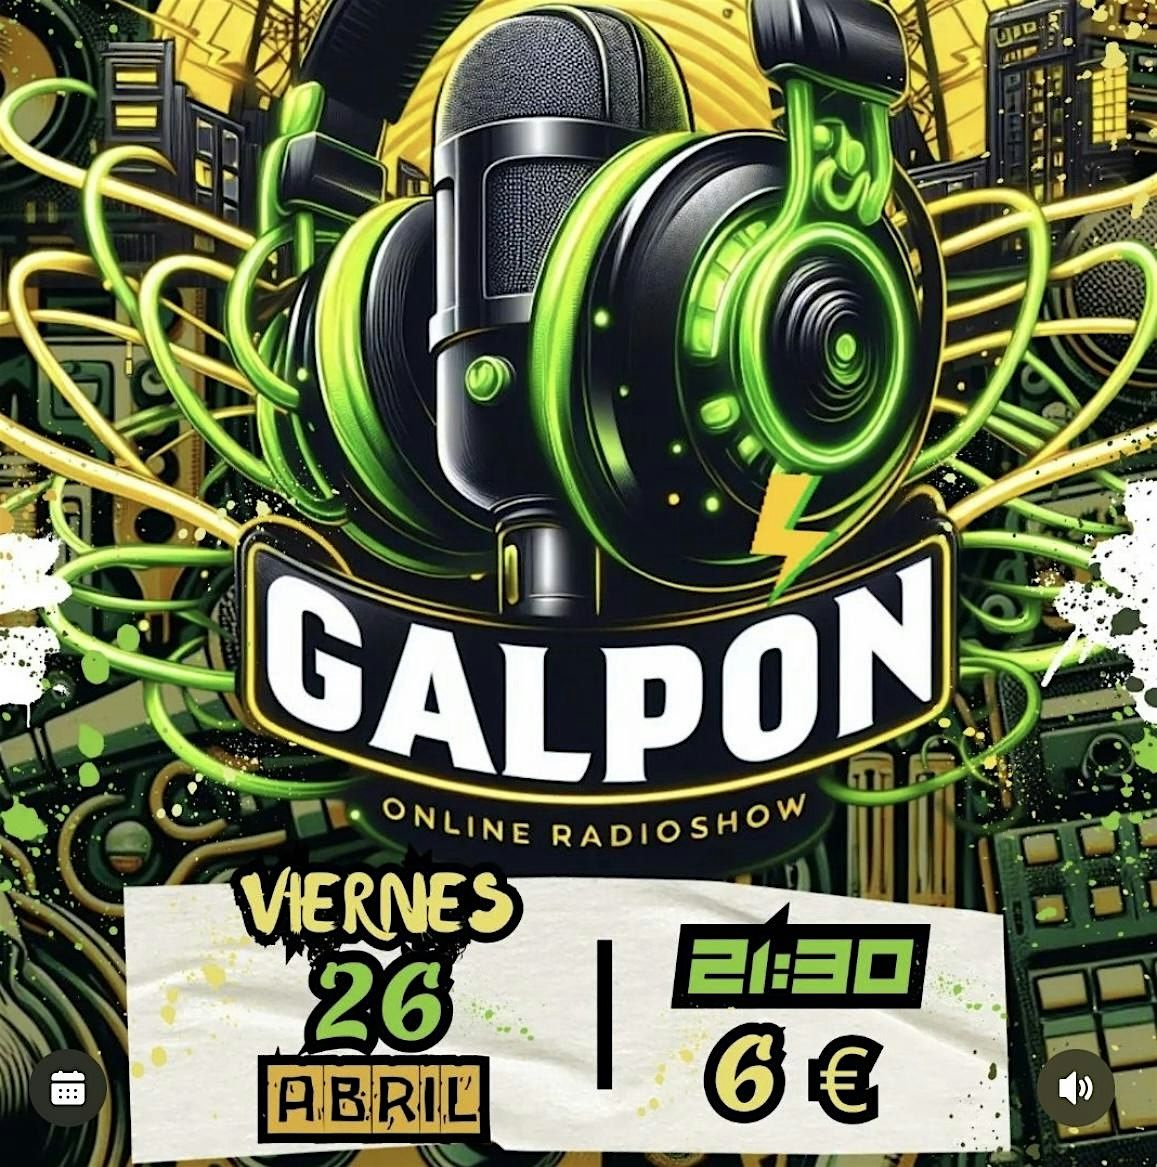 El Galponline Radio Show - Micro Abierto!